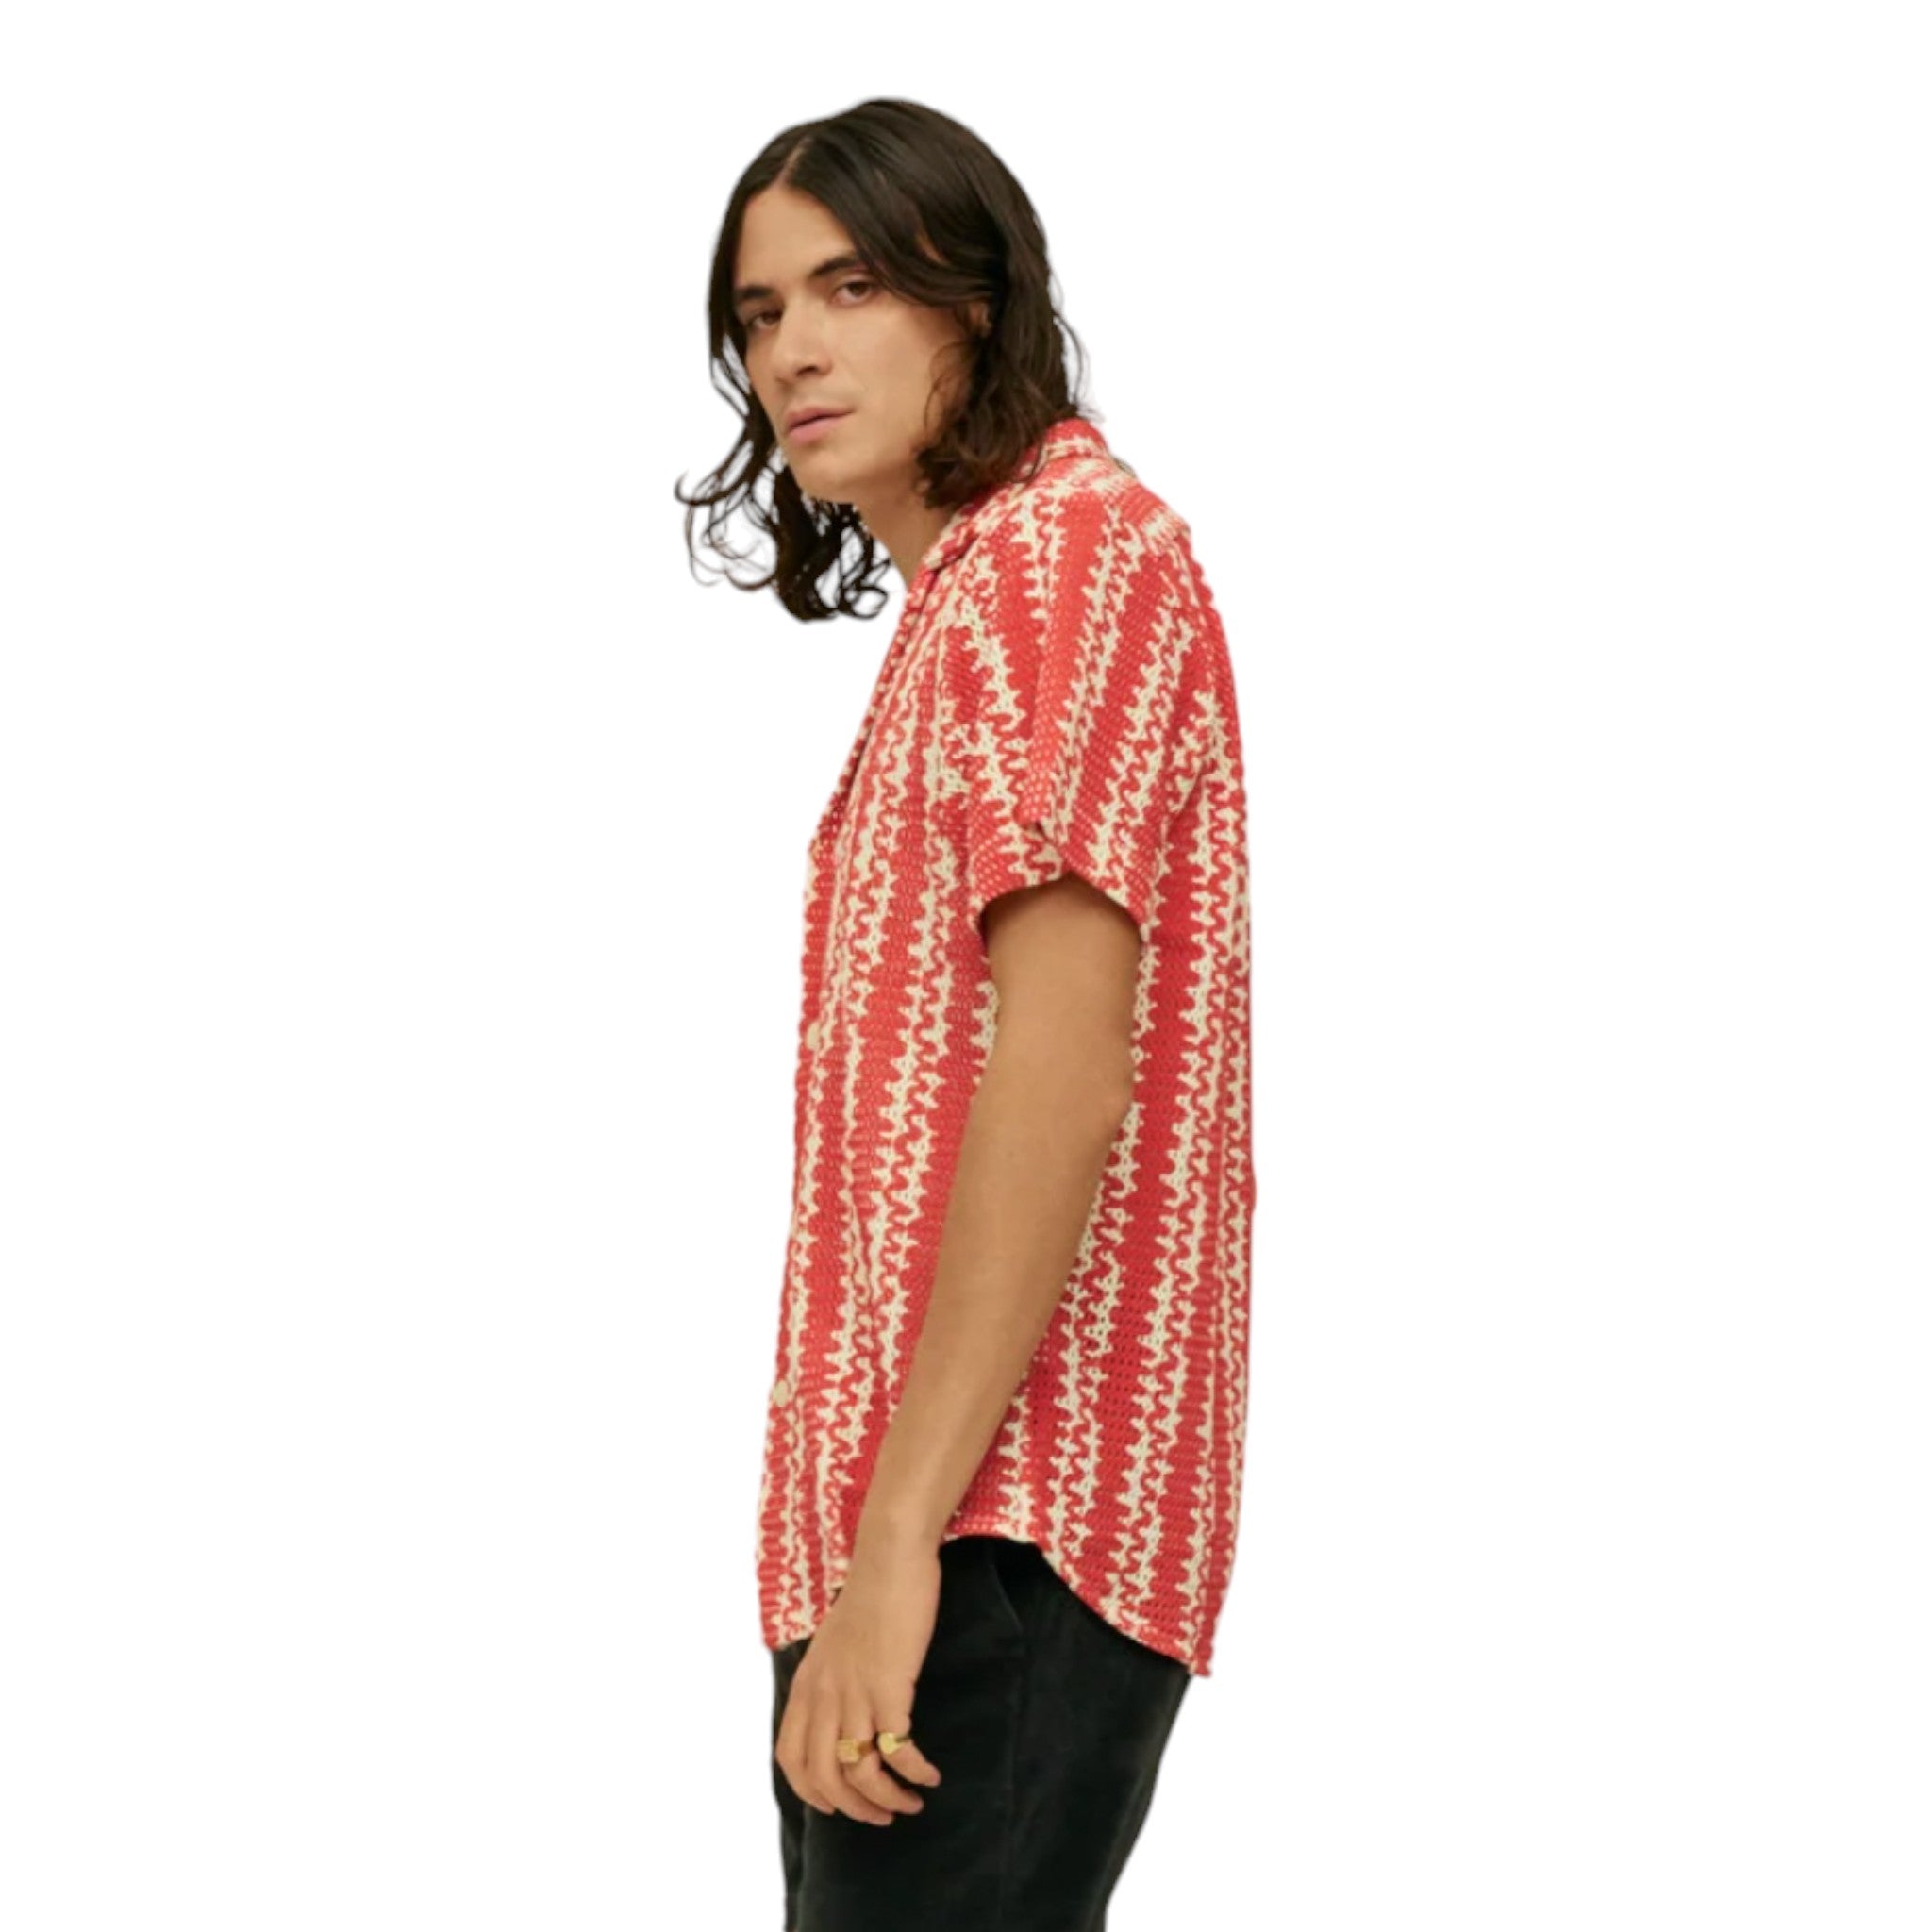 OAS - Red Scribble Cuba Net Shirt